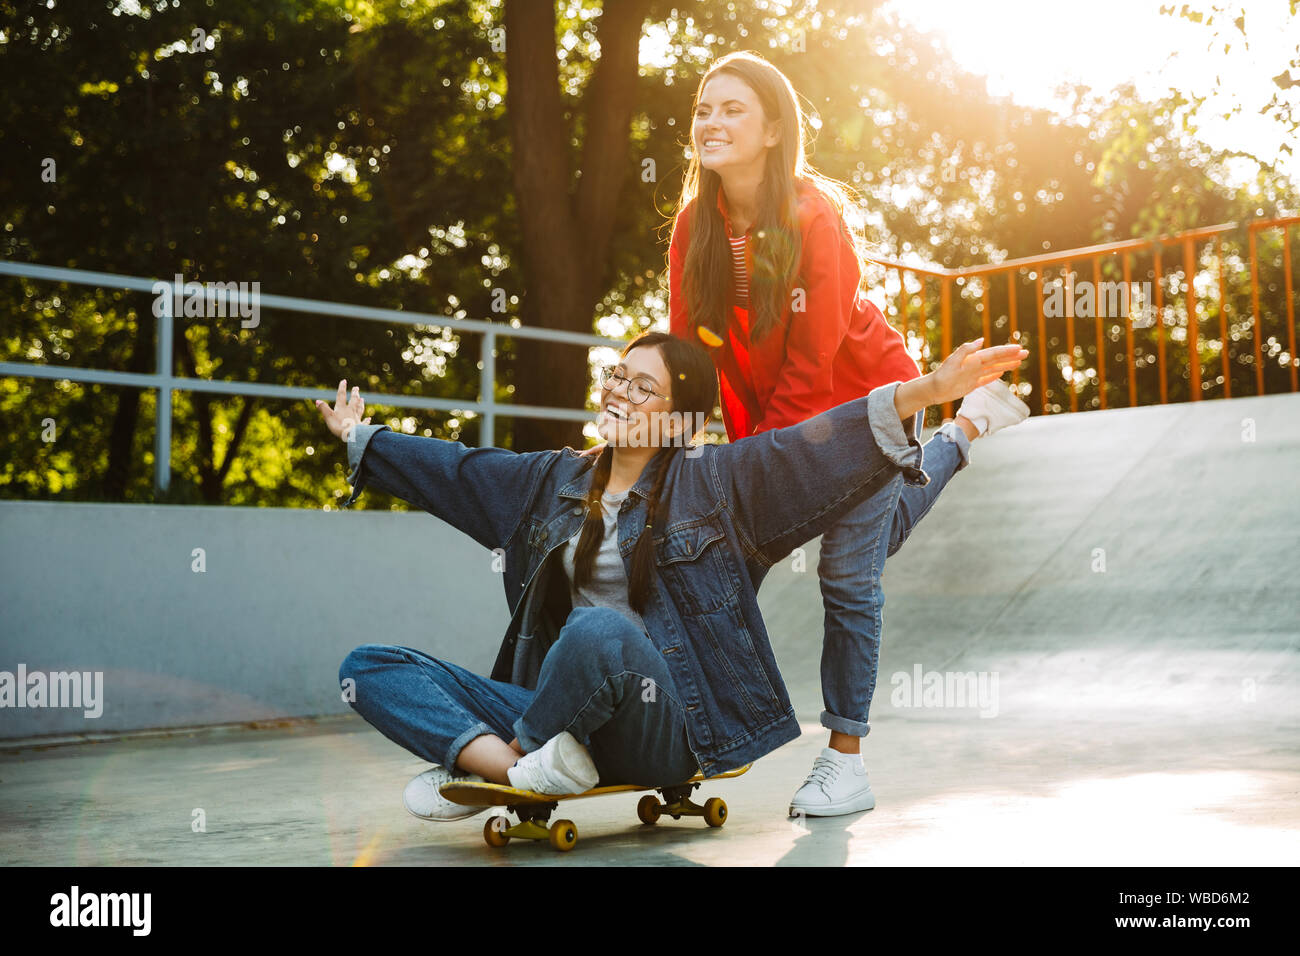 Image de deux professionnels des filles habillés en vêtements de denim et de l'équitation rire ensemble en skateboard skate park Banque D'Images